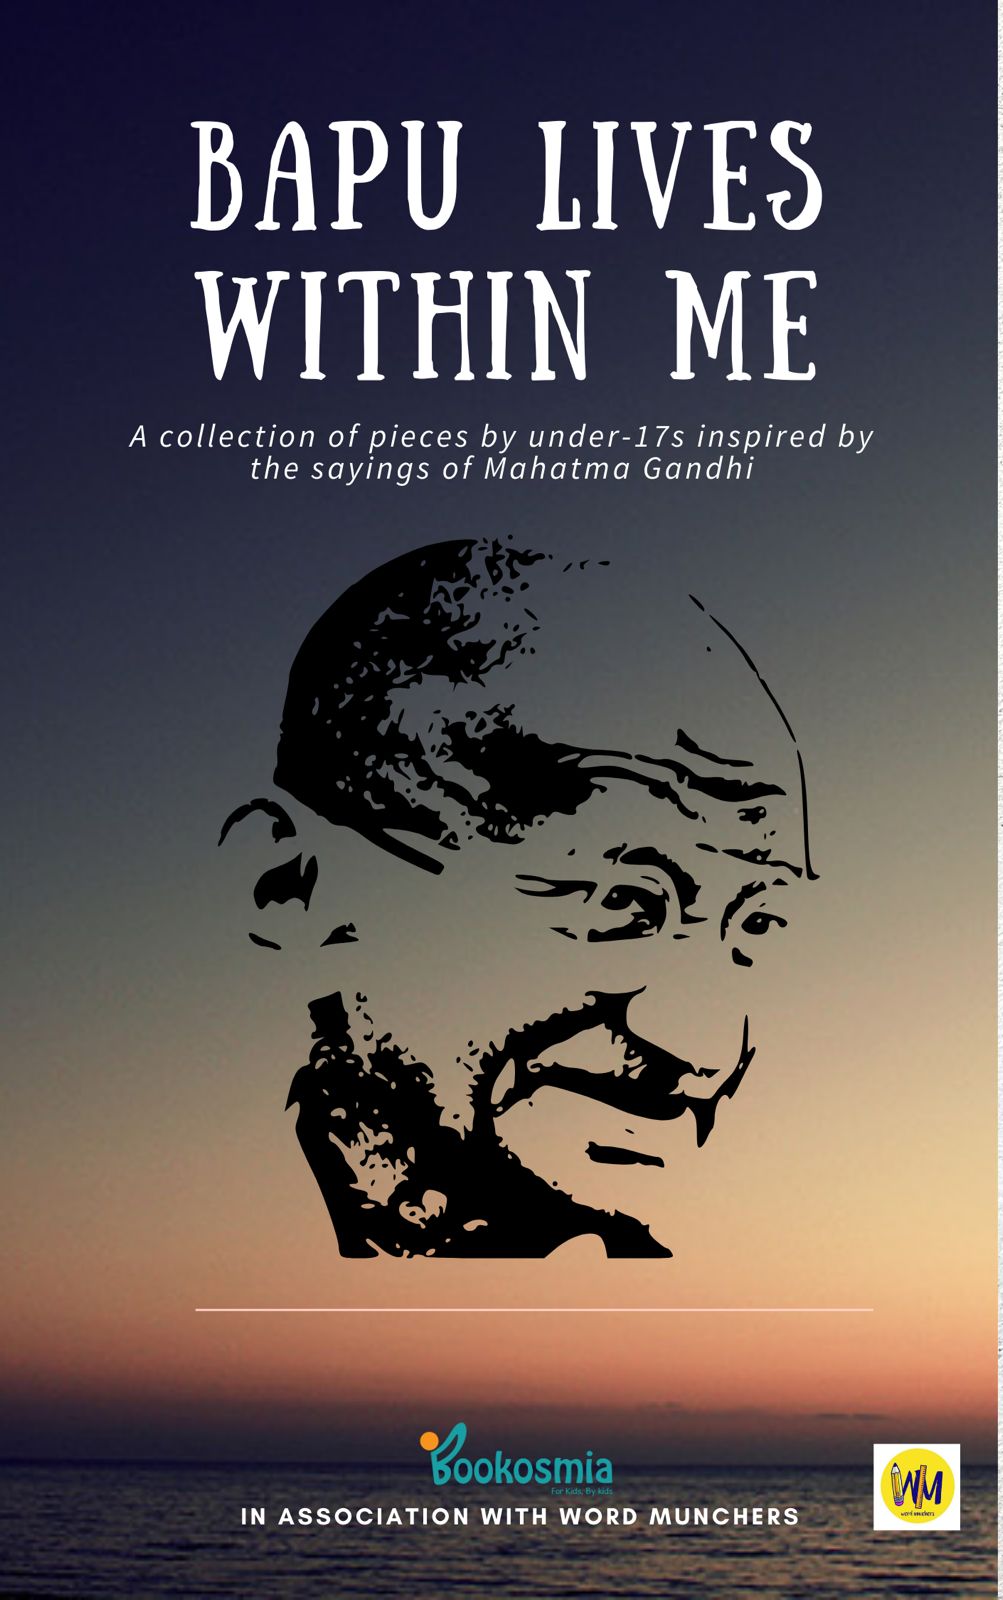 Bapu book Kids on Gandhi